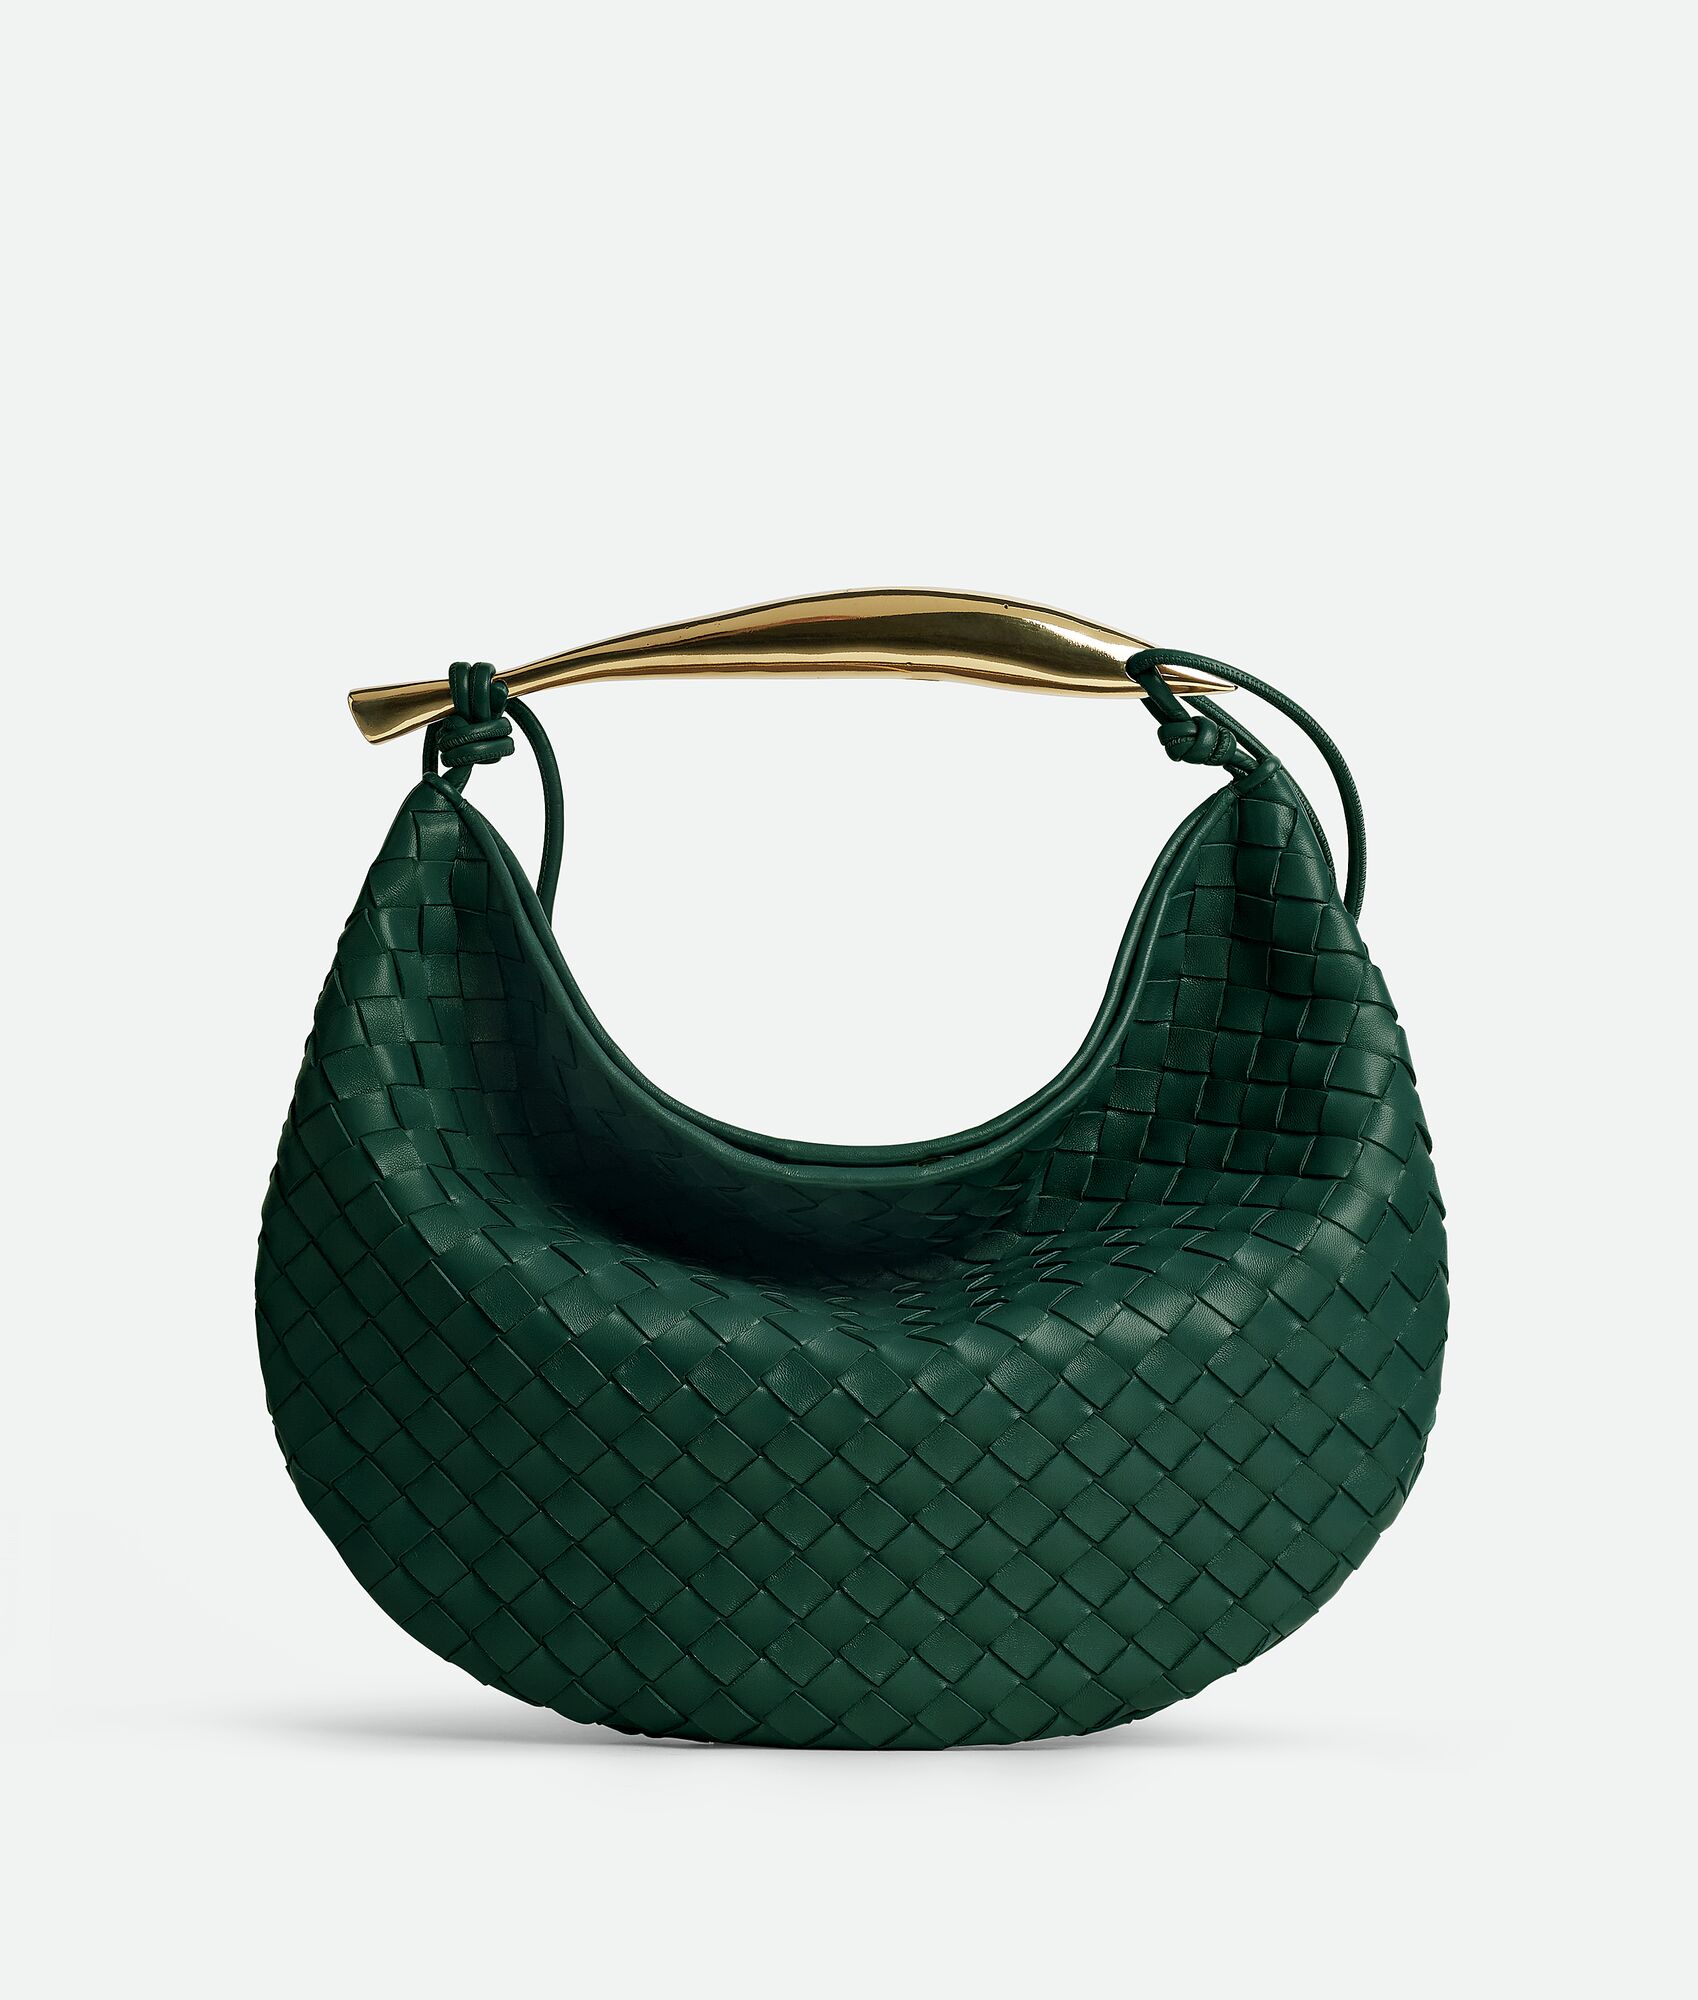 Bottega Veneta® Women's Medium Sardine in Emerald green. Shop online now.